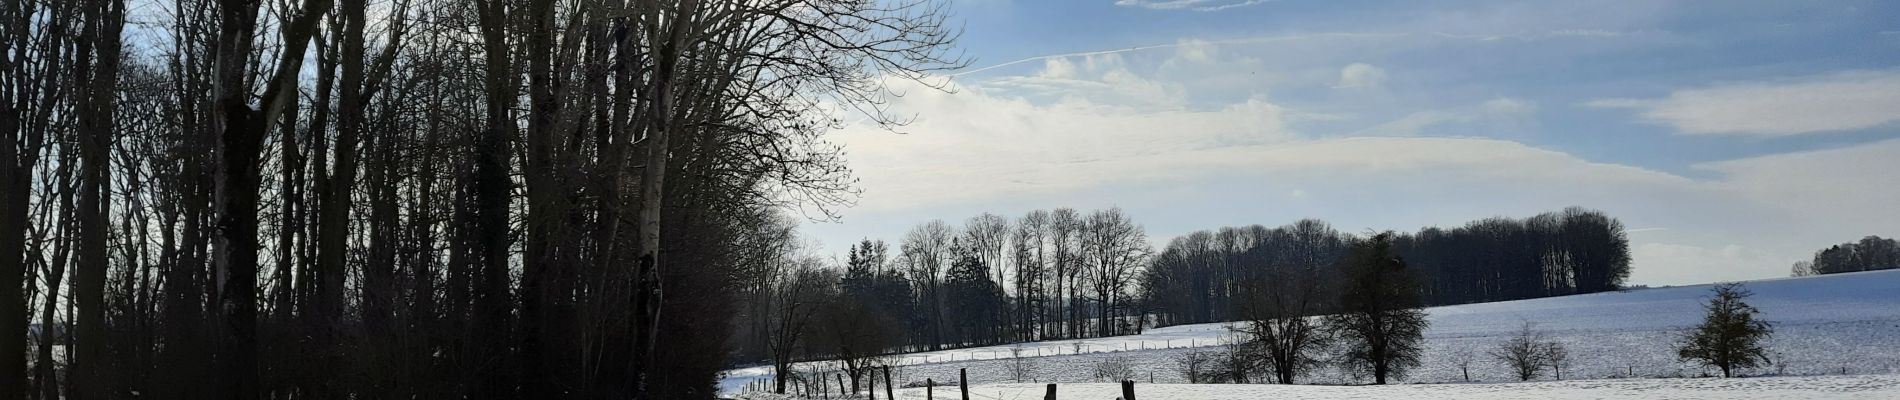 Randonnée Marche Tinlot - Ramelot sous la neige - Photo